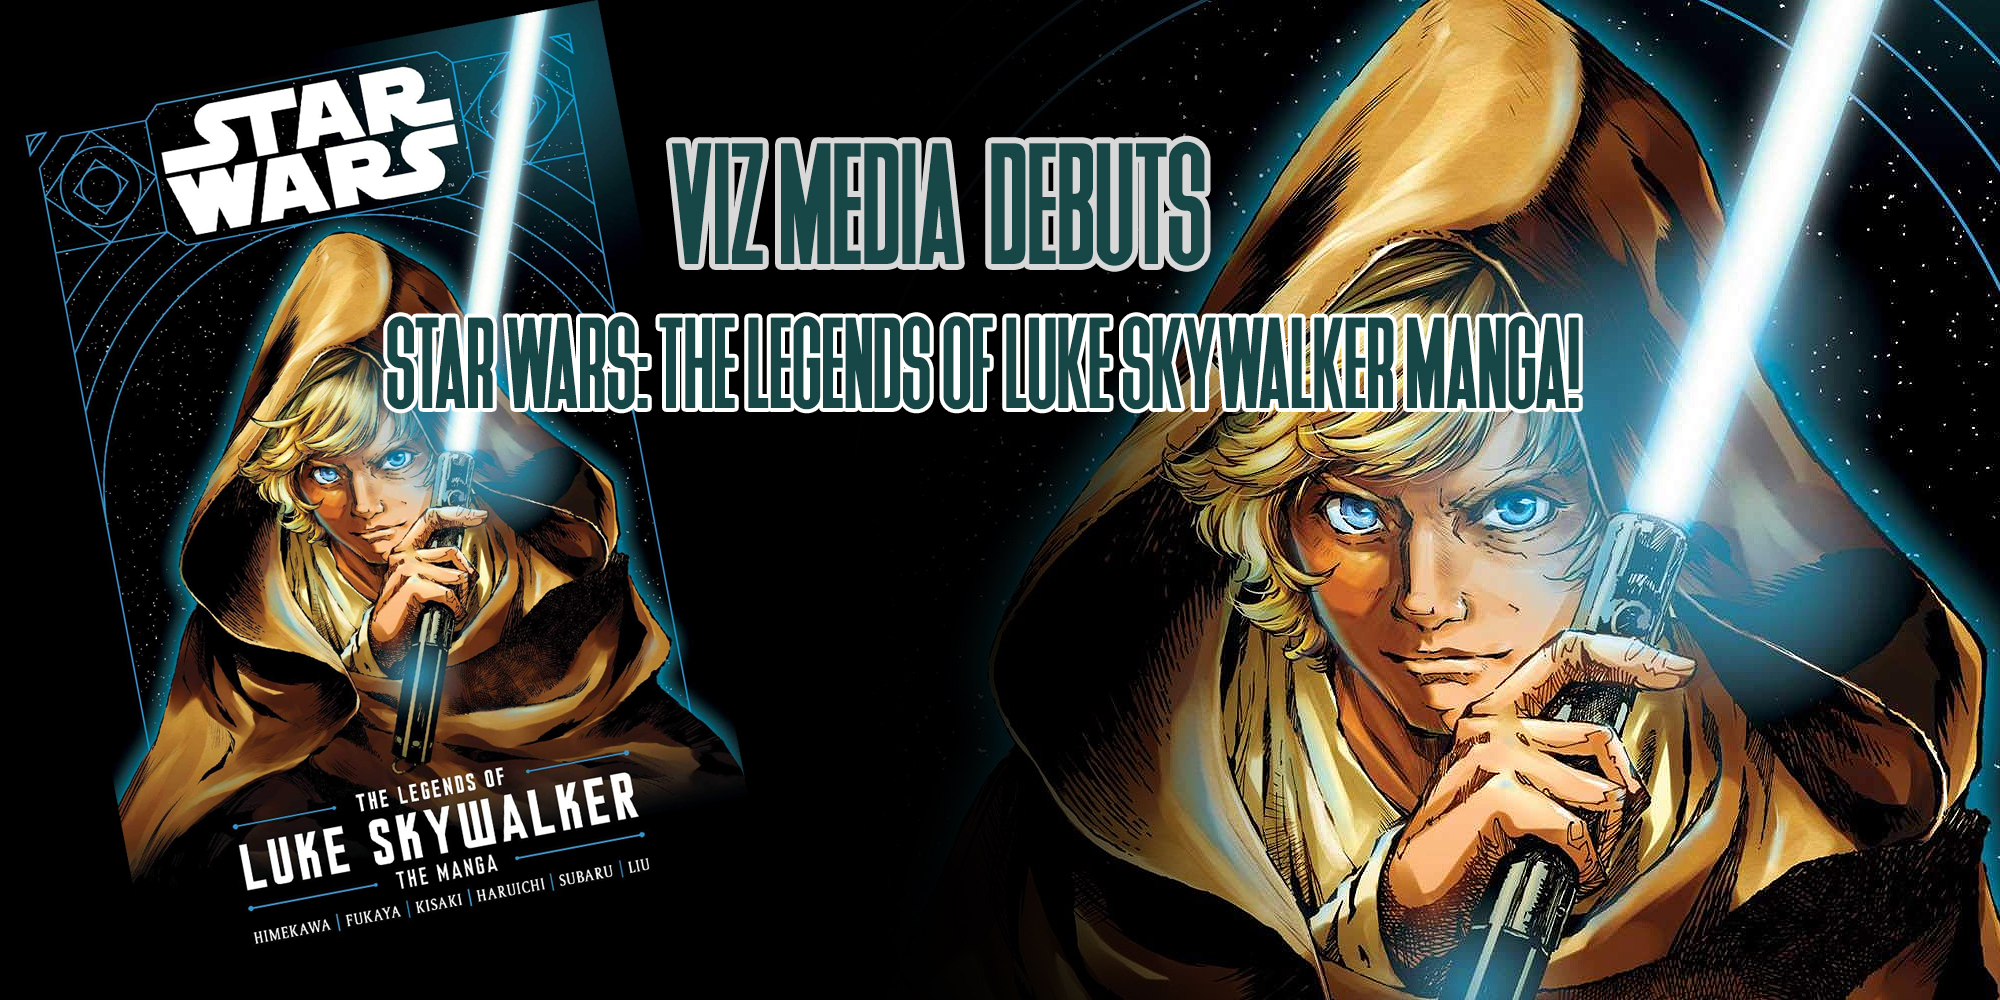 VIZ Media Debuts STAR WARS: THE LEGENDS OF LUKE SKYWALKER Manga!